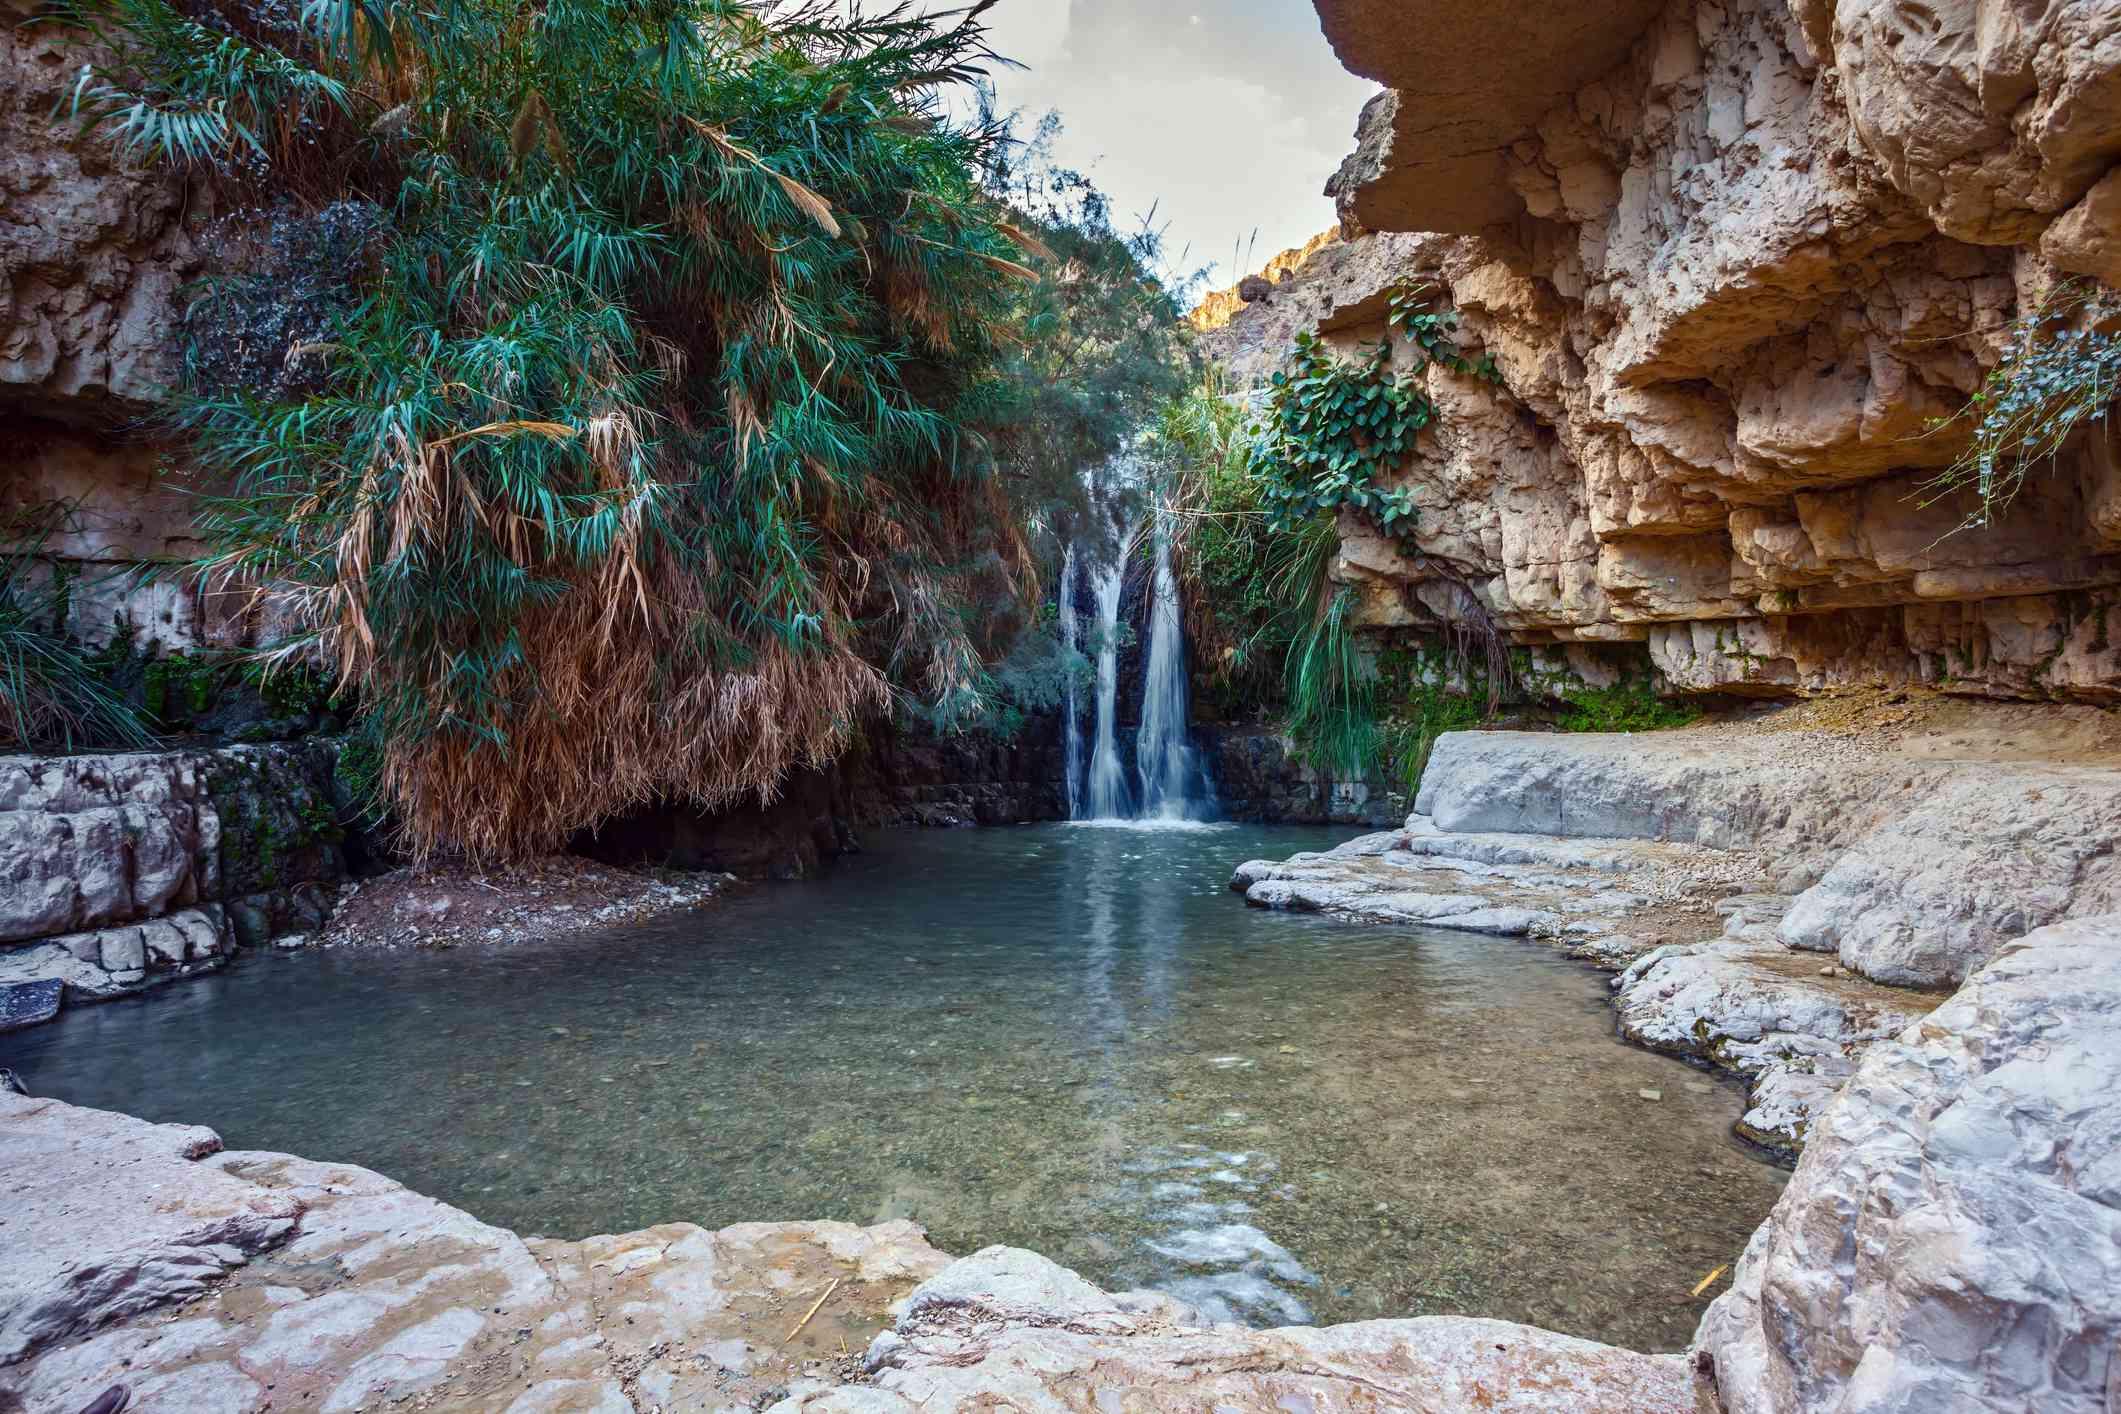 estanque con agua clara y una cascada rodeada de formaciones rocosas y palmeras situado en el parque nacional de Ein Gedi, Israel